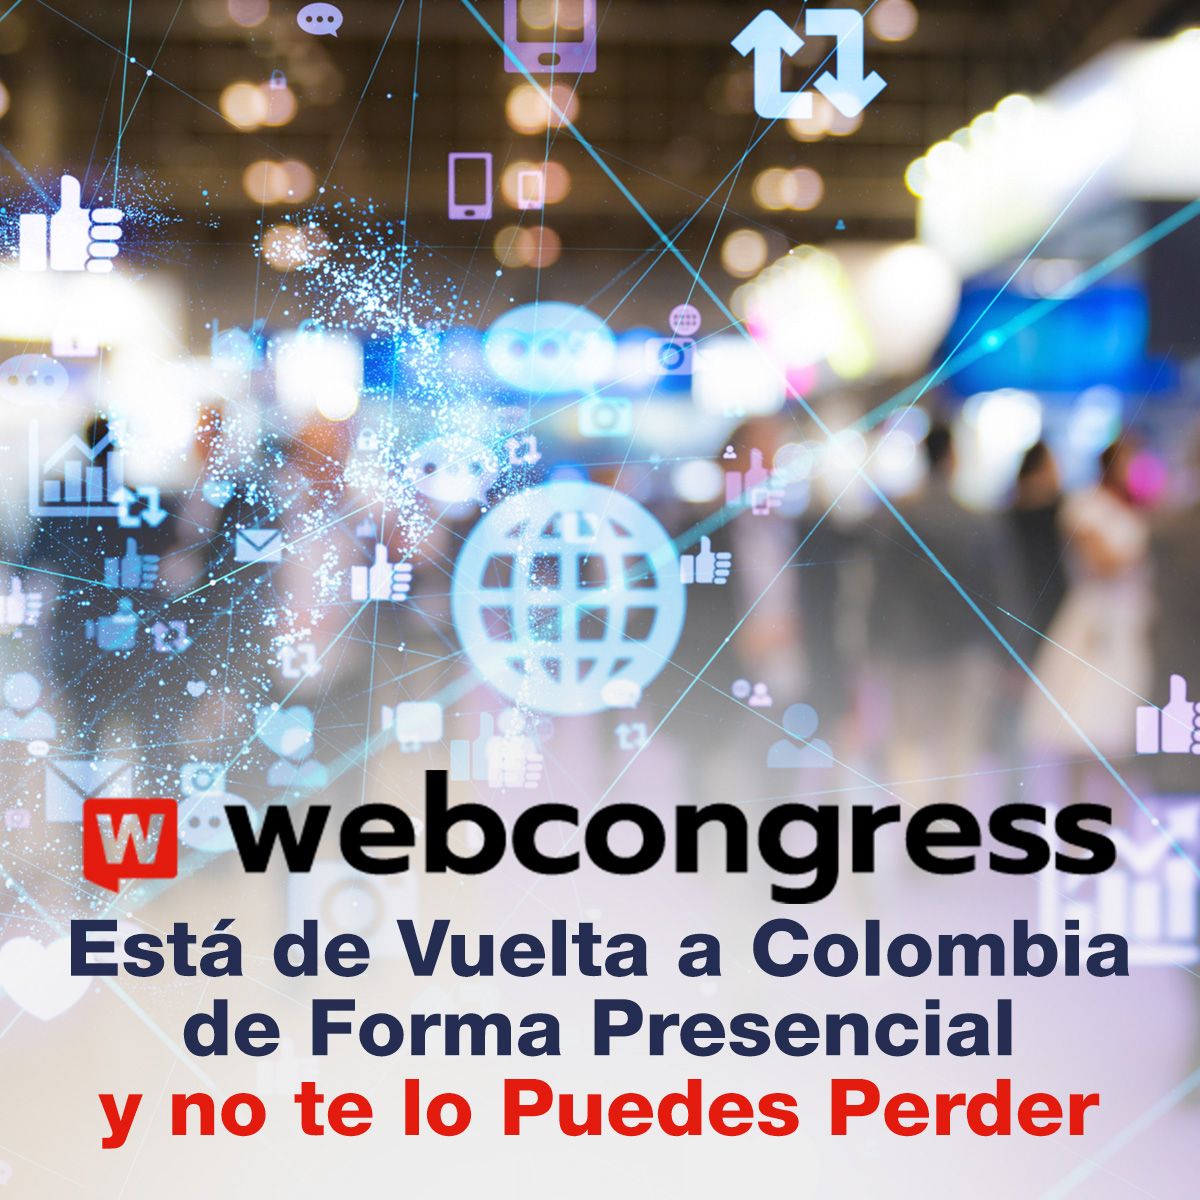 WebCongress Está de Vuelta a Colombia de Forma Presencial y no te lo Puedes Perder